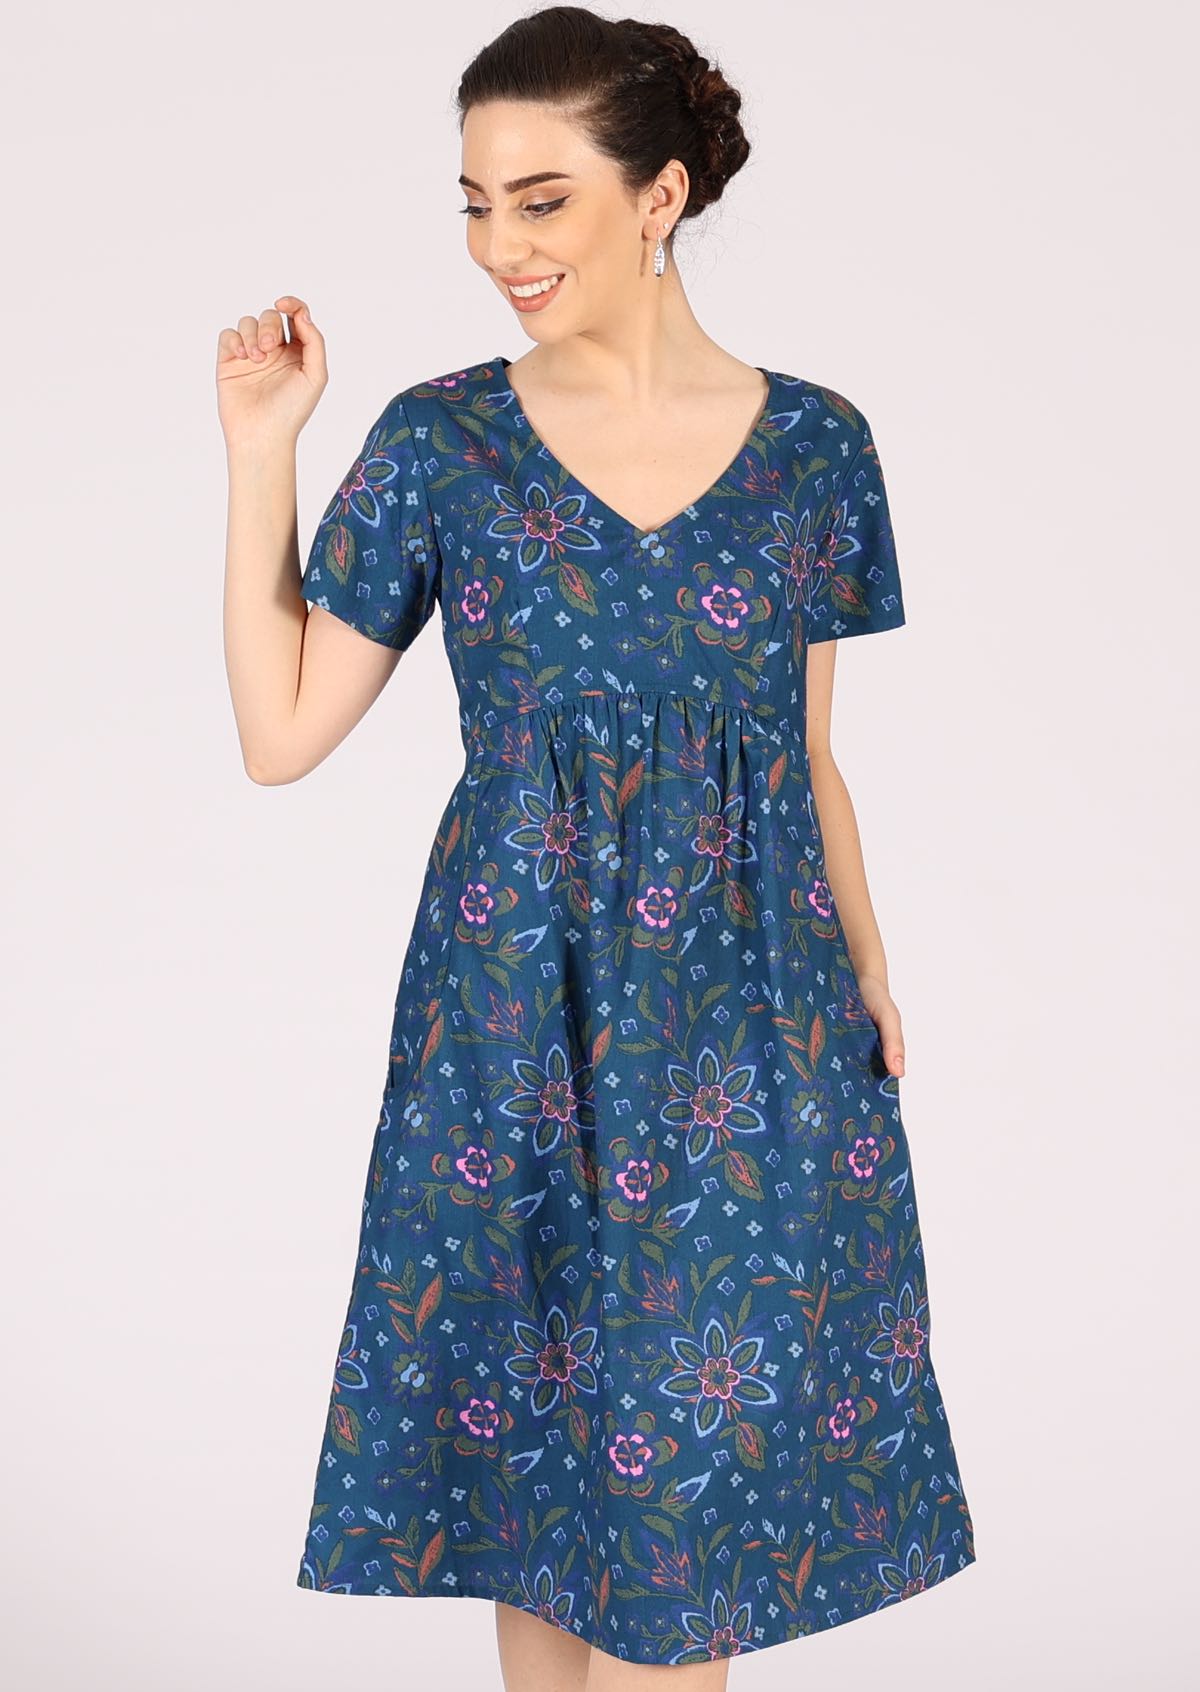 Model wears 100% cotton short sleeve dress in blue. 